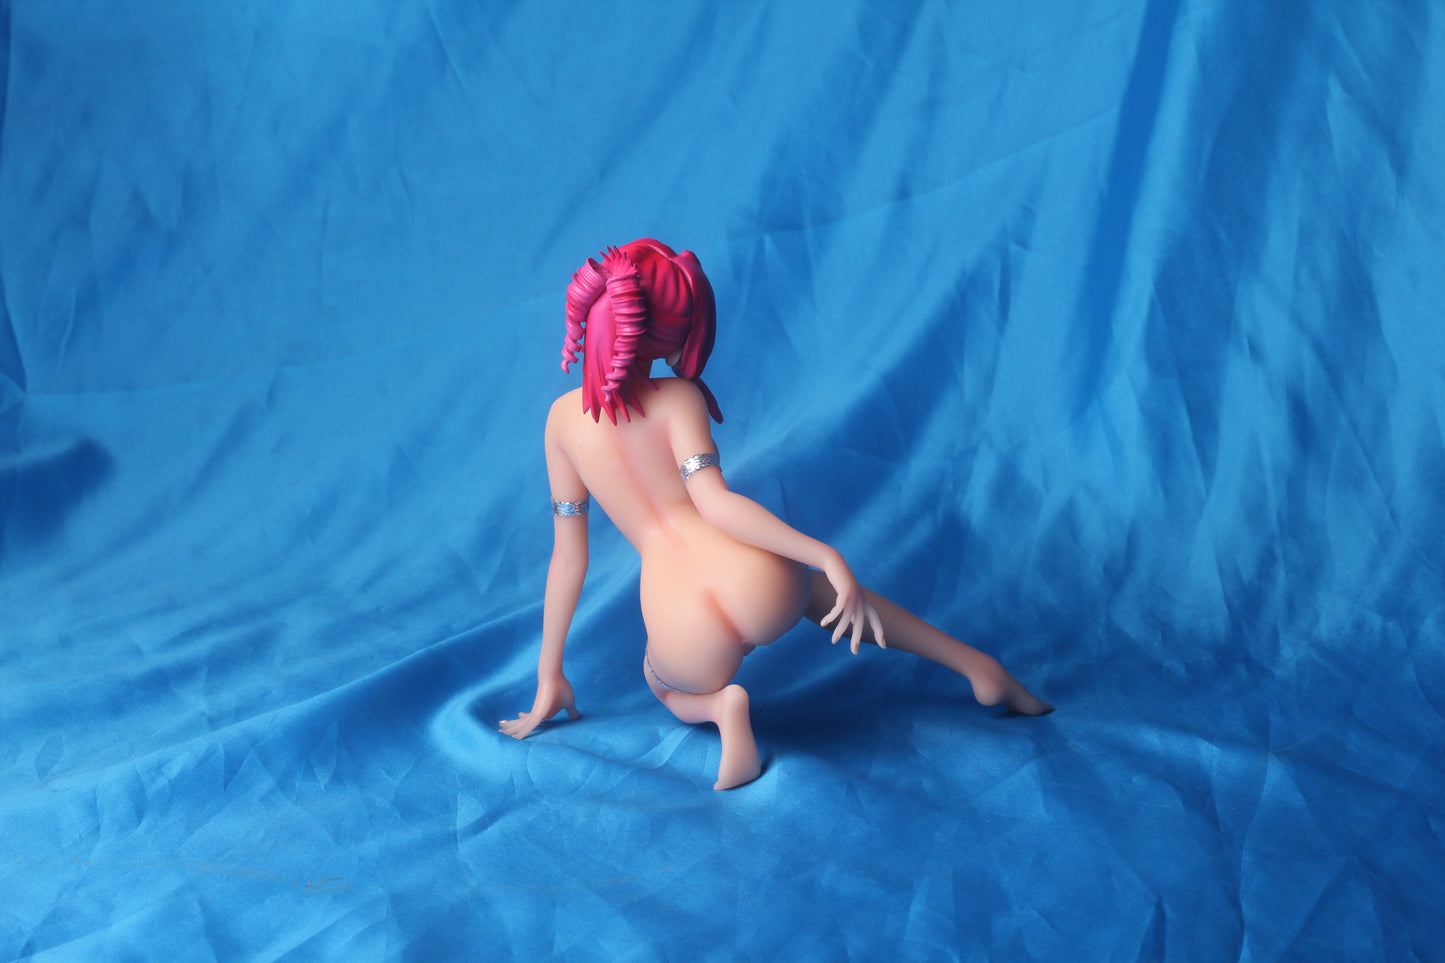 Onegai teacher Kazami Mizuho 1/6 naked anime figure sexy resin figure girl